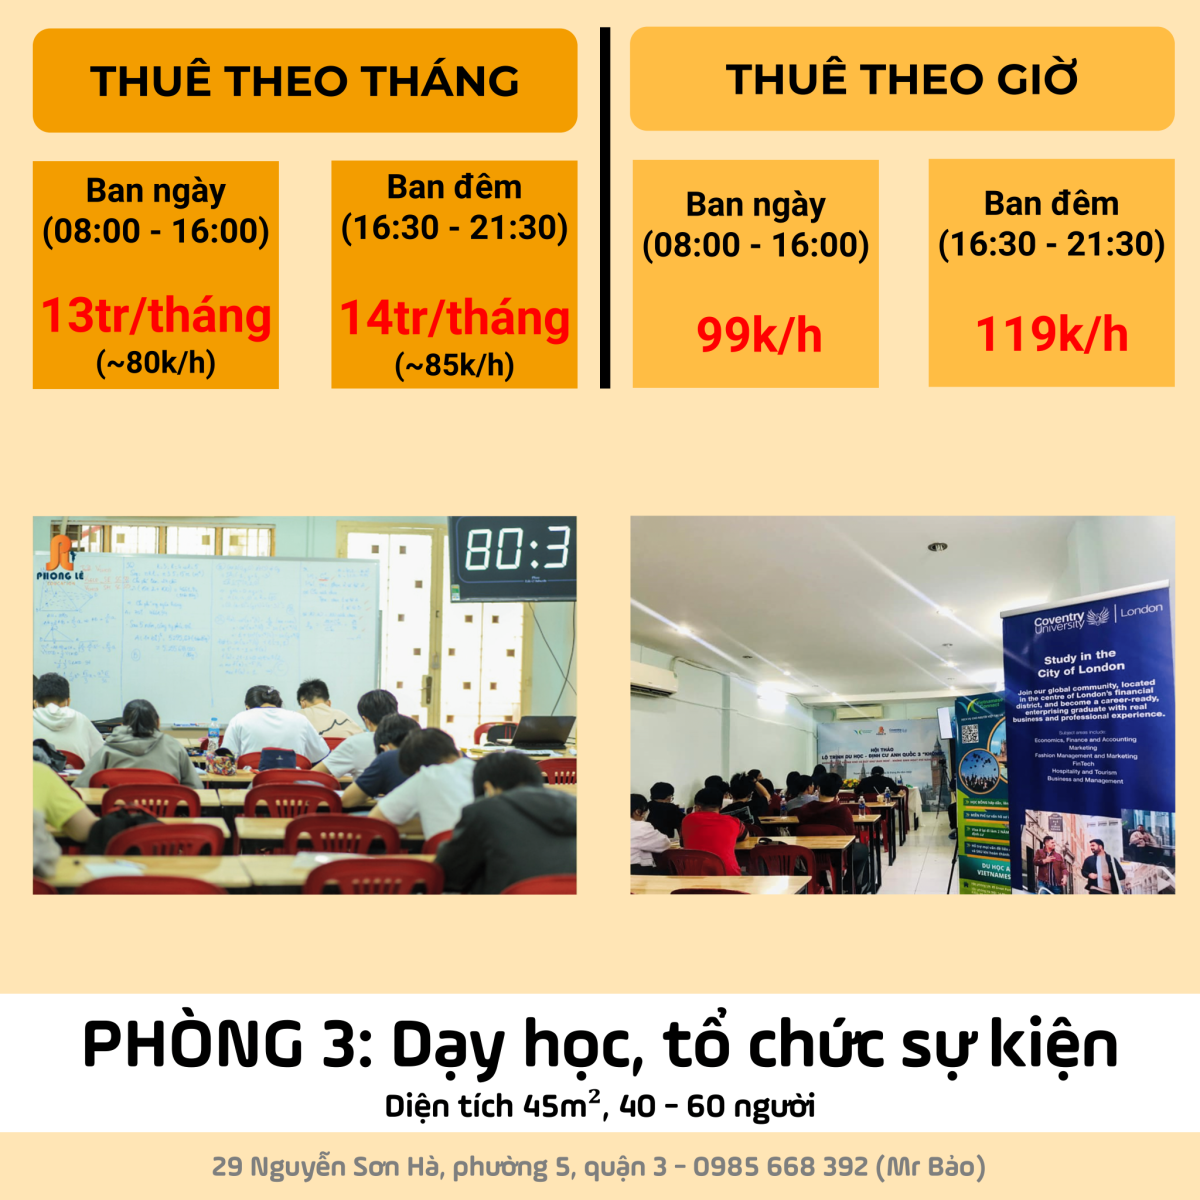 Cho thuê phòng dạy học, học nhóm, tổ chức sự kiện ngay Nguyễn Sơn Hà, Phường 5, Quận 3